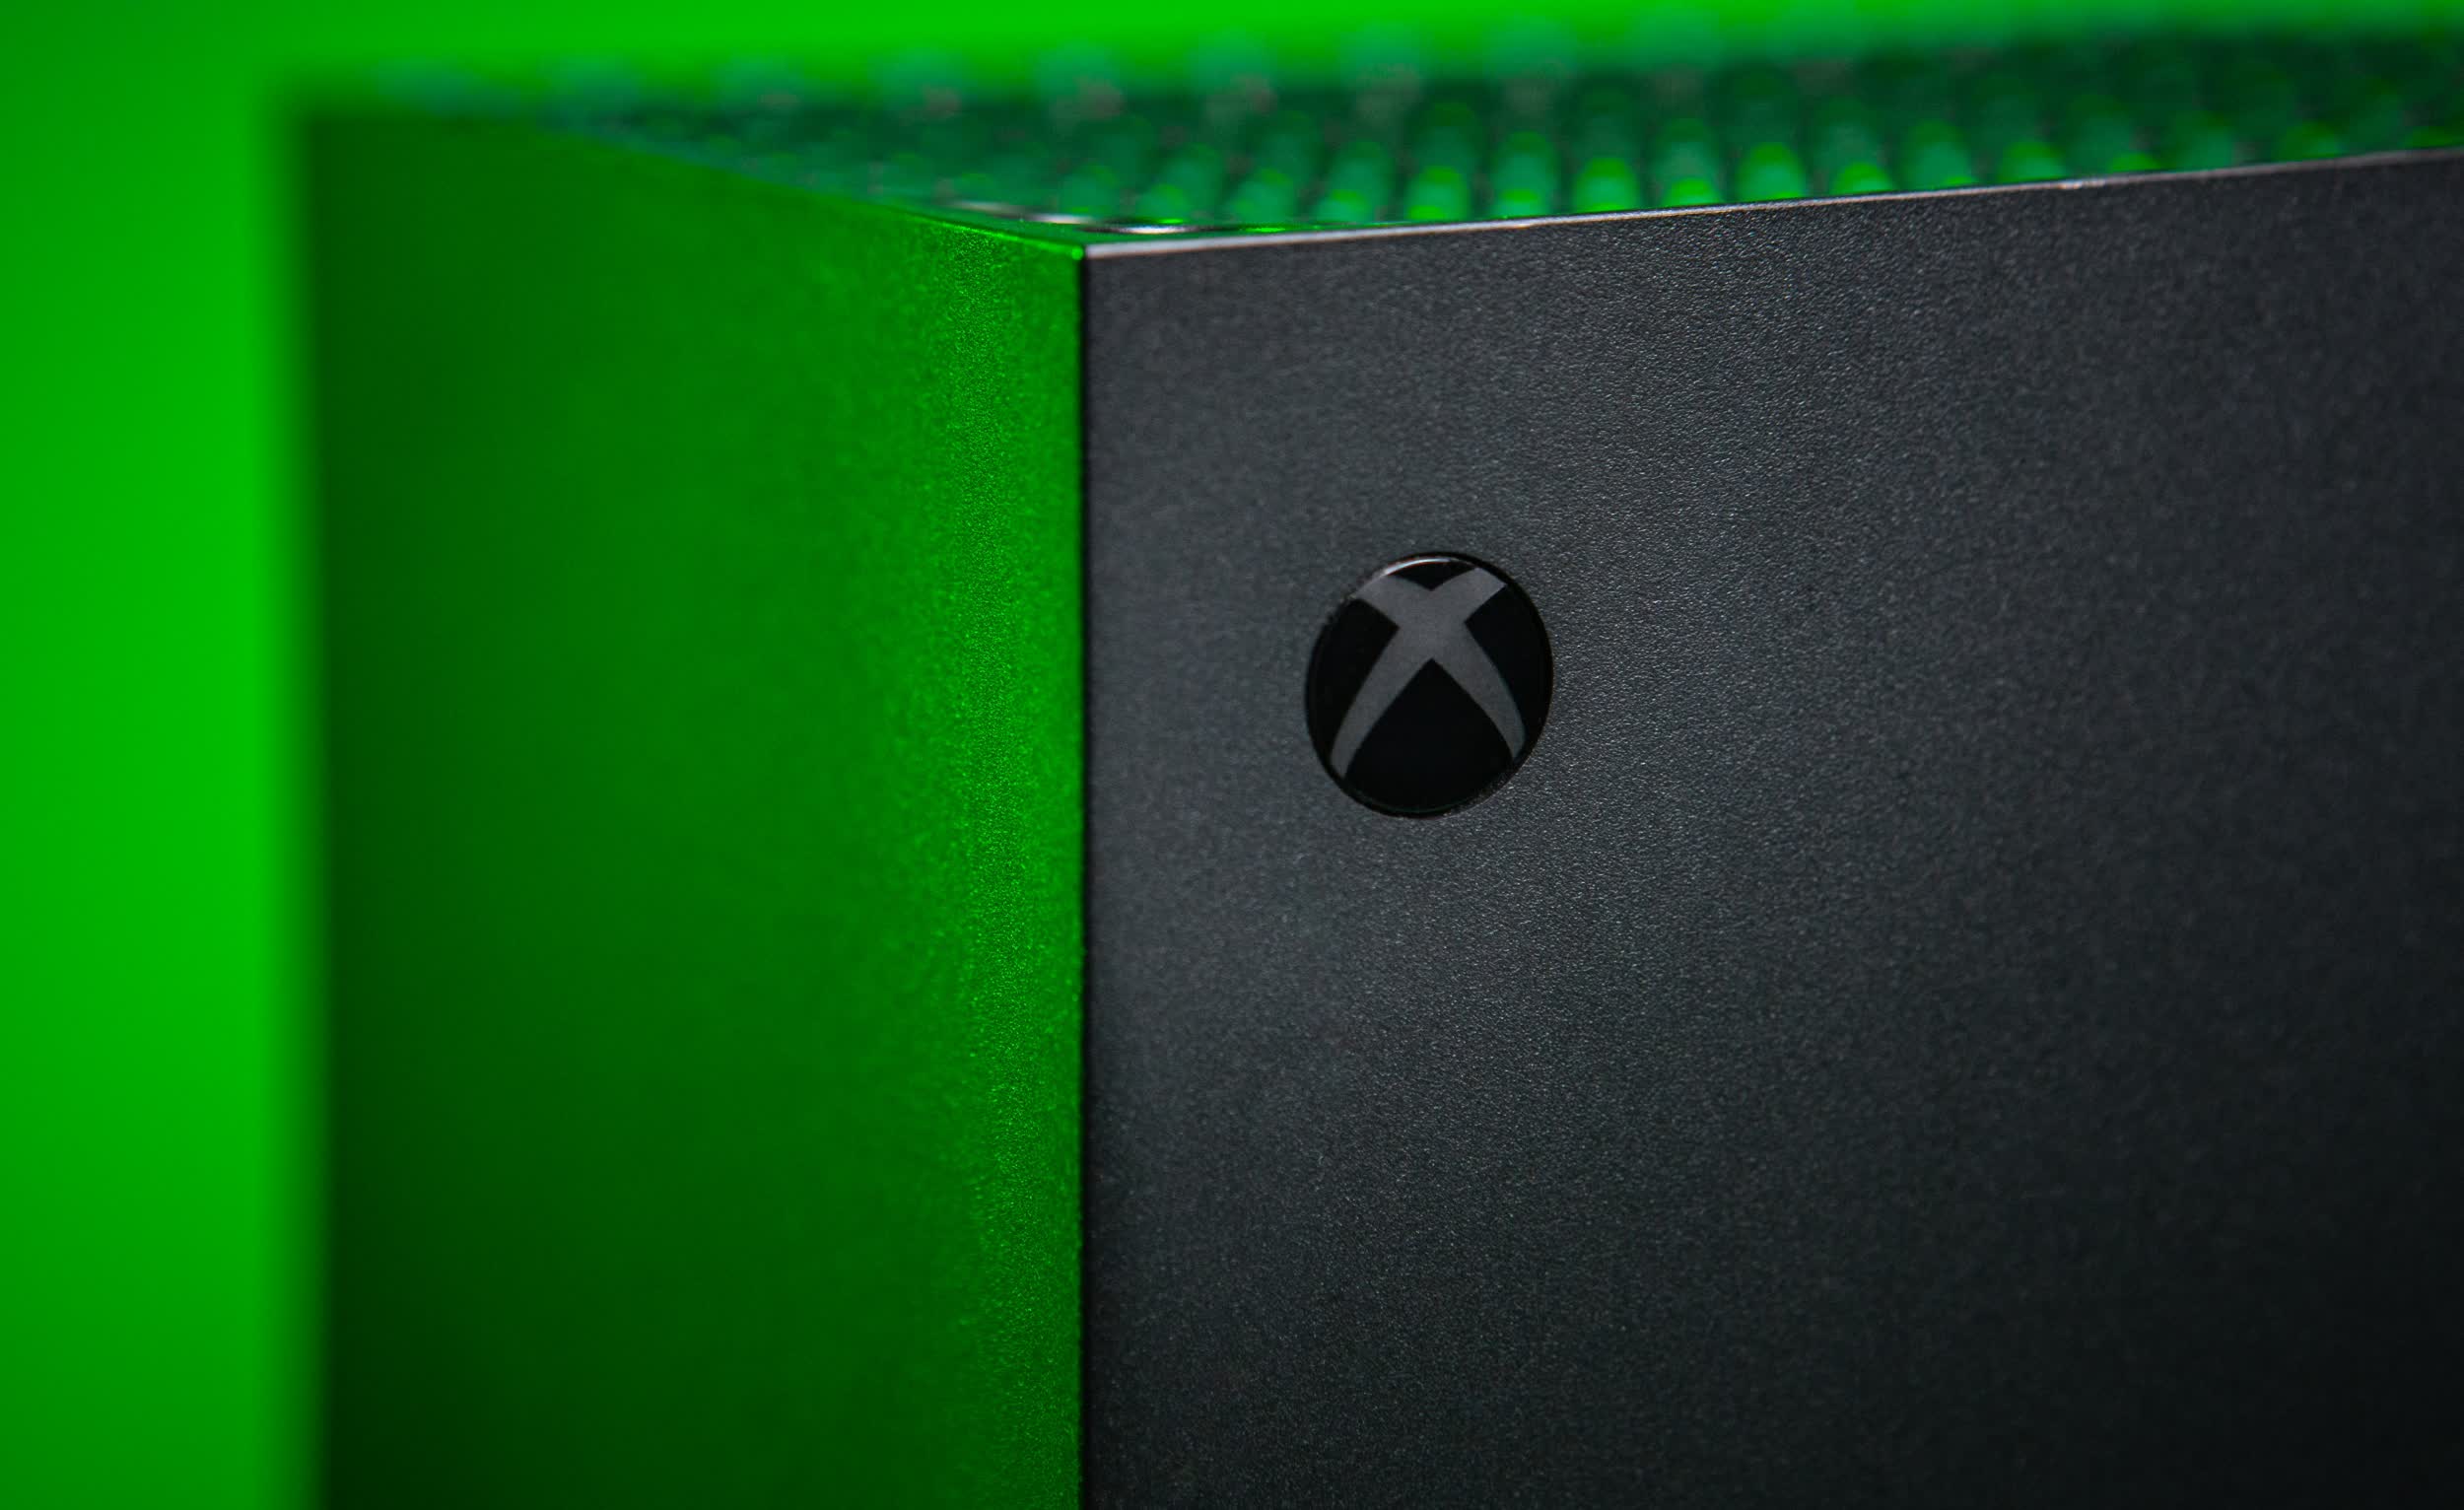 développeurs jeux pensent plupart exclusifs Xbox seront bientôt multiplateformes